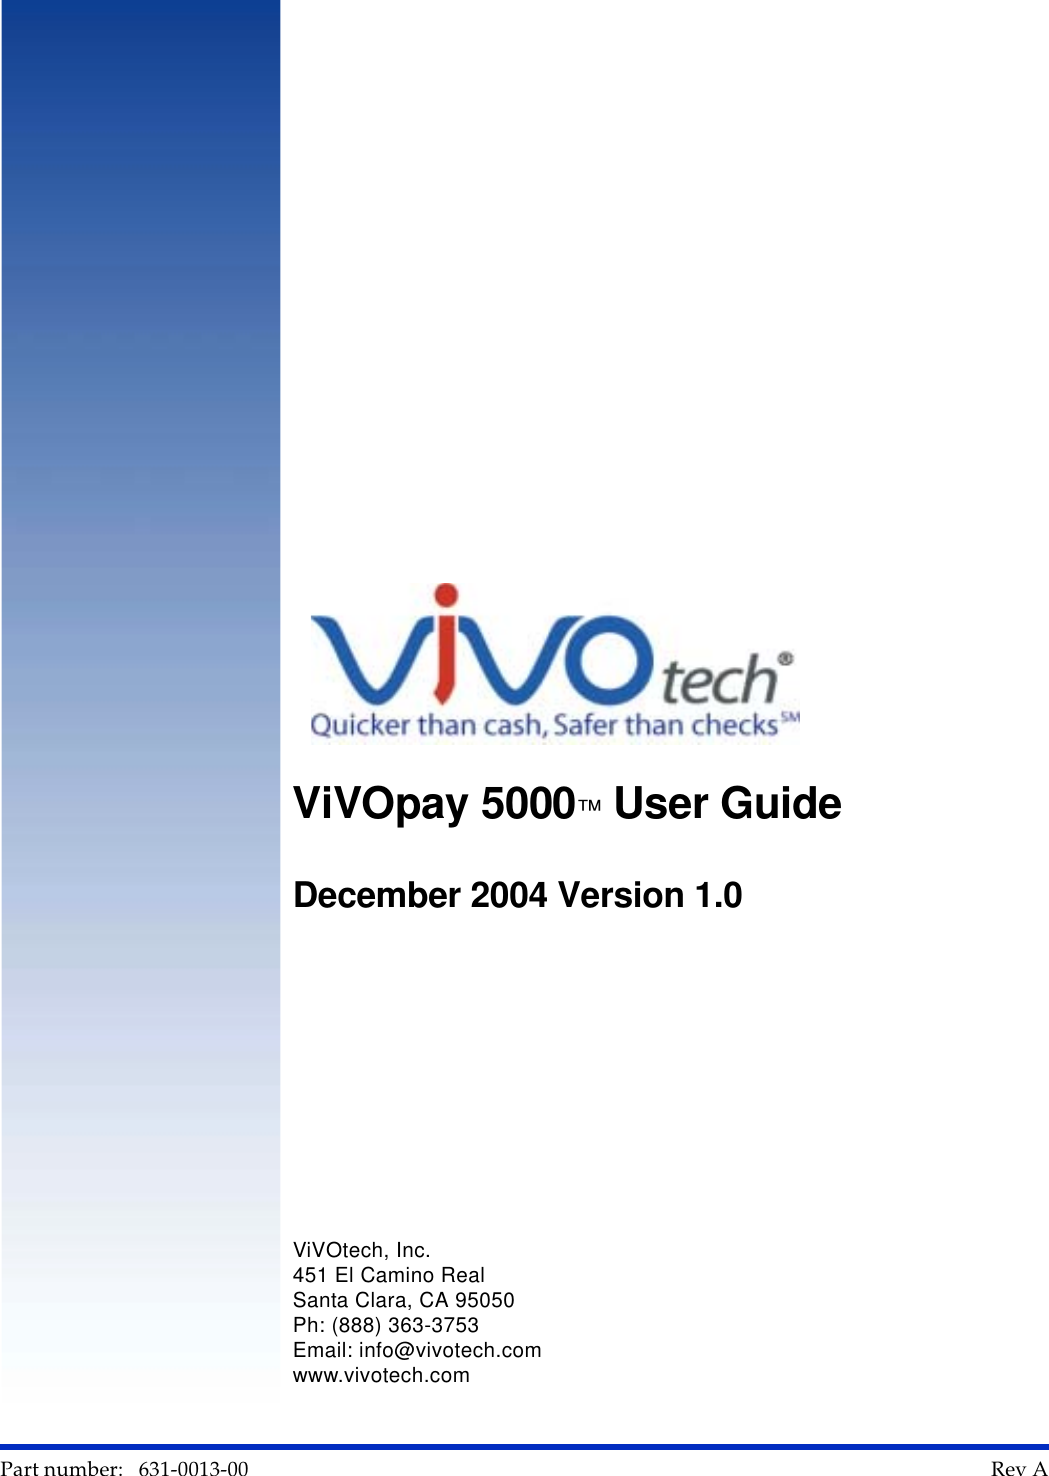      Part number:   631-0013-00                                                                                                                                                        Rev A    AViVOpay 5000™ User Guide December 2004 Version 1.0ViVOtech, Inc.451 El Camino RealSanta Clara, CA 95050Ph: (888) 363-3753Email: info@vivotech.comwww.vivotech.com